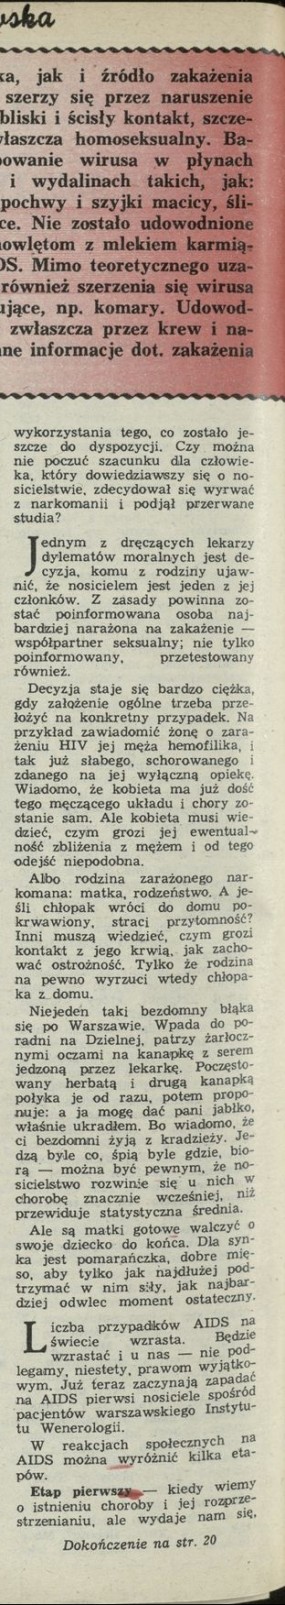 AIDS po polsku